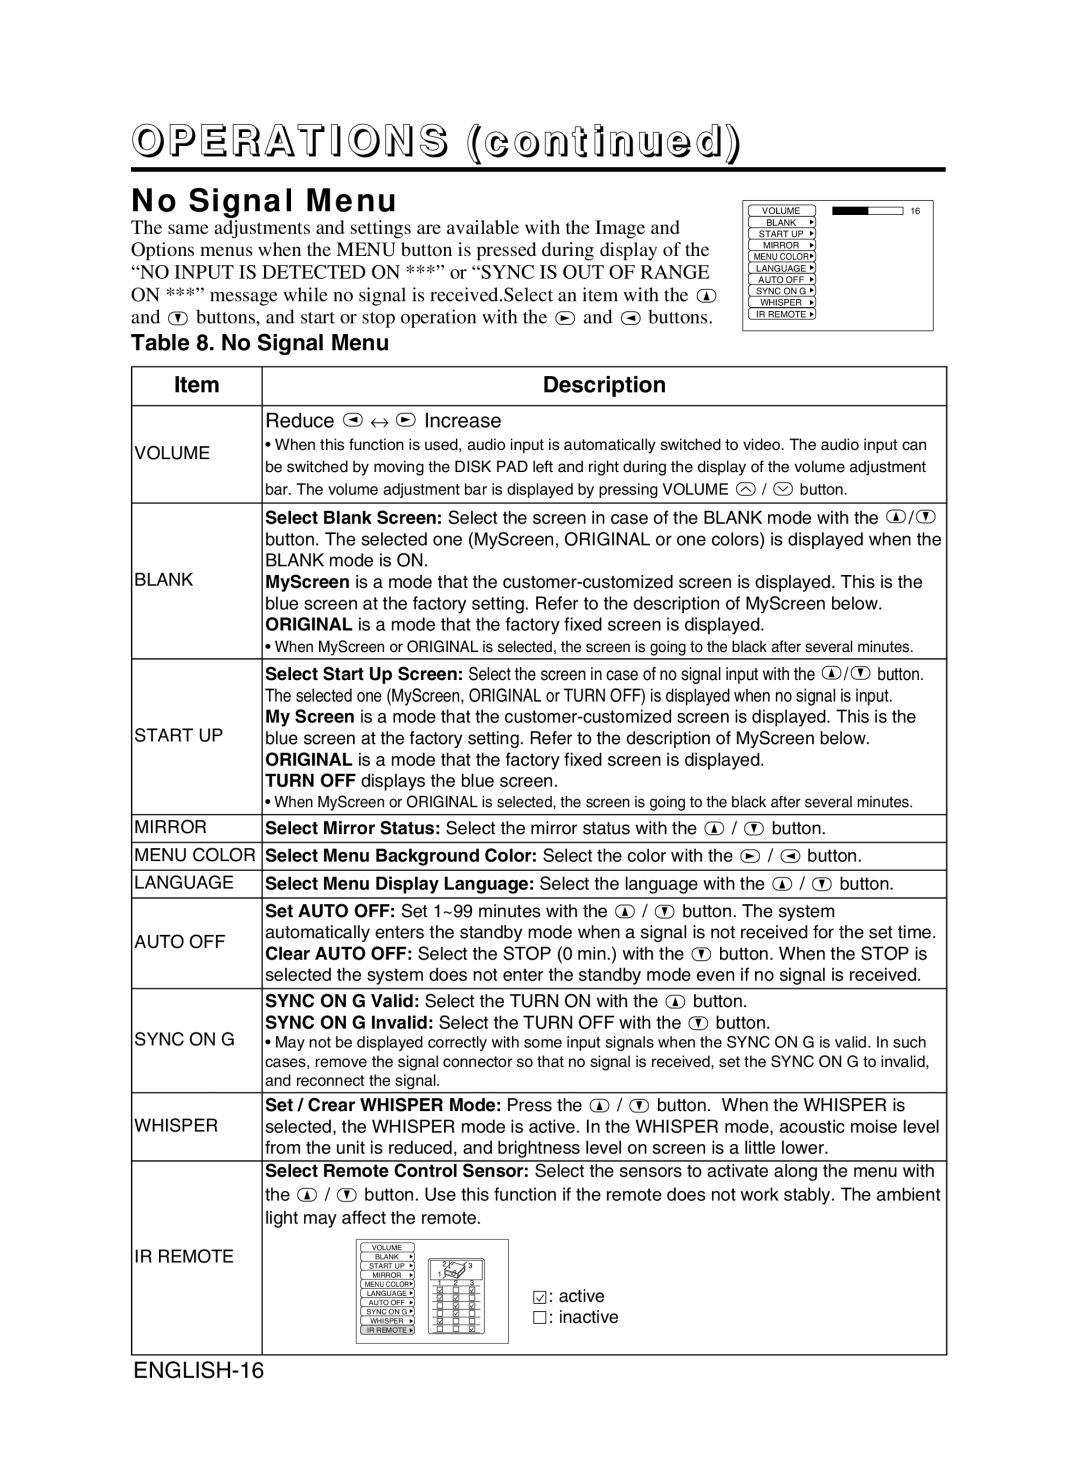 BOXLIGHT CP-775I user manual No Signal Menu, ENGLISH-16, OPERATIONS continued, Description 